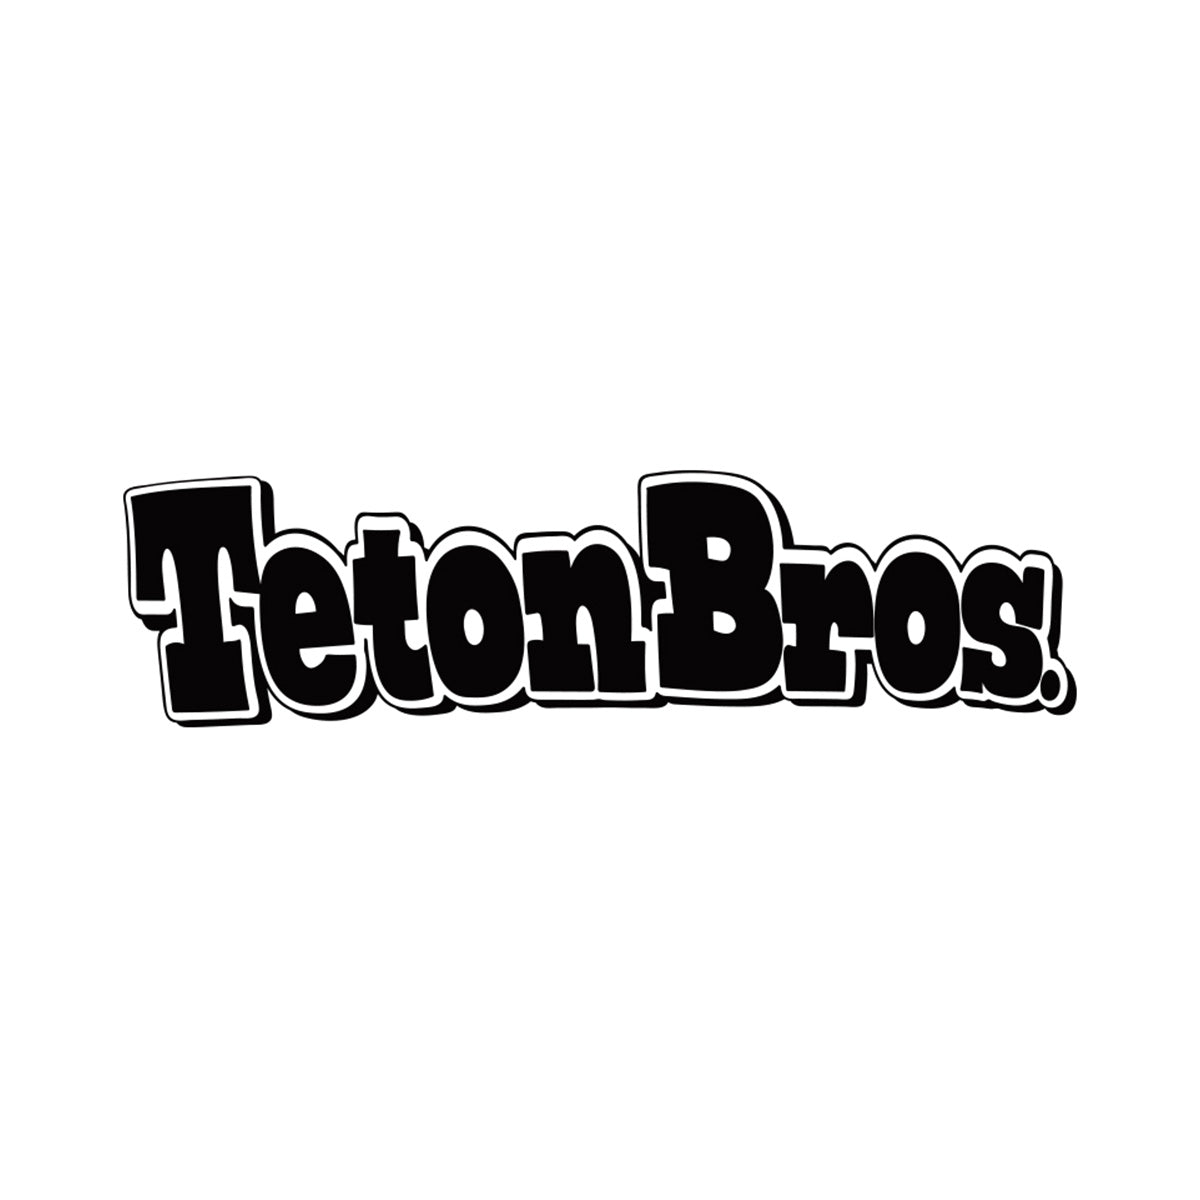 Teton Bros. TB Logo Tee Men's